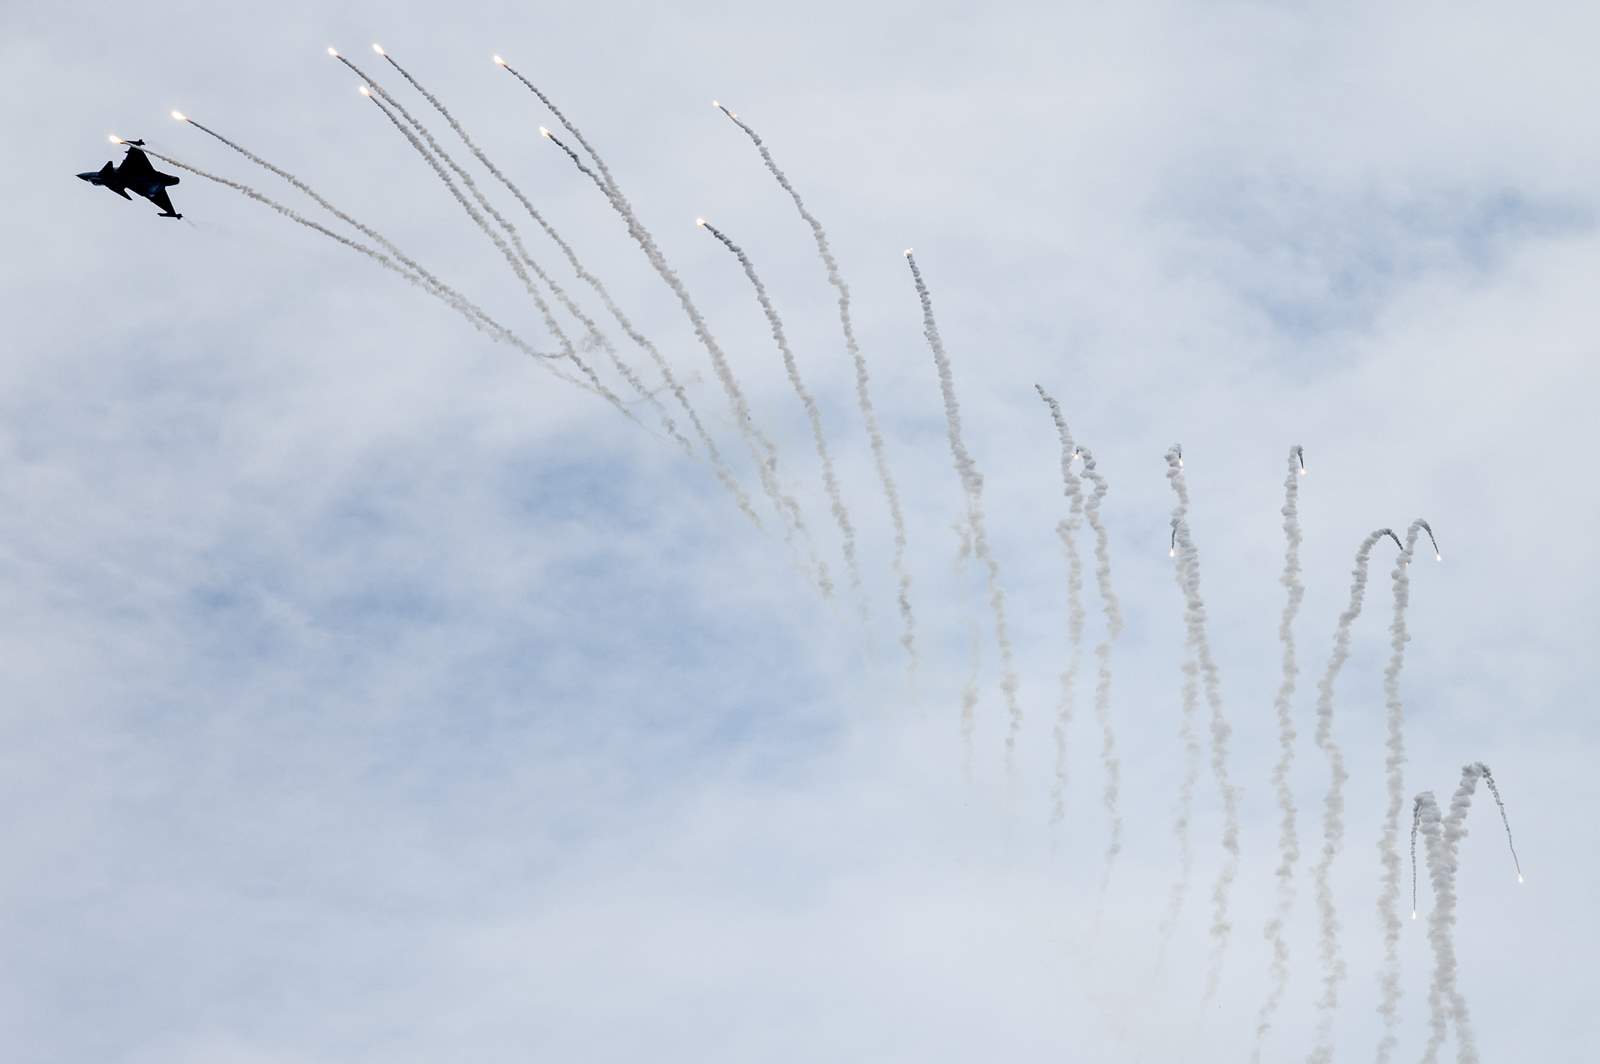 केस्केमेट, 2021 में अंतर्राष्ट्रीय एयर शो और सैन्य प्रदर्शन। फोटो एमटीआई